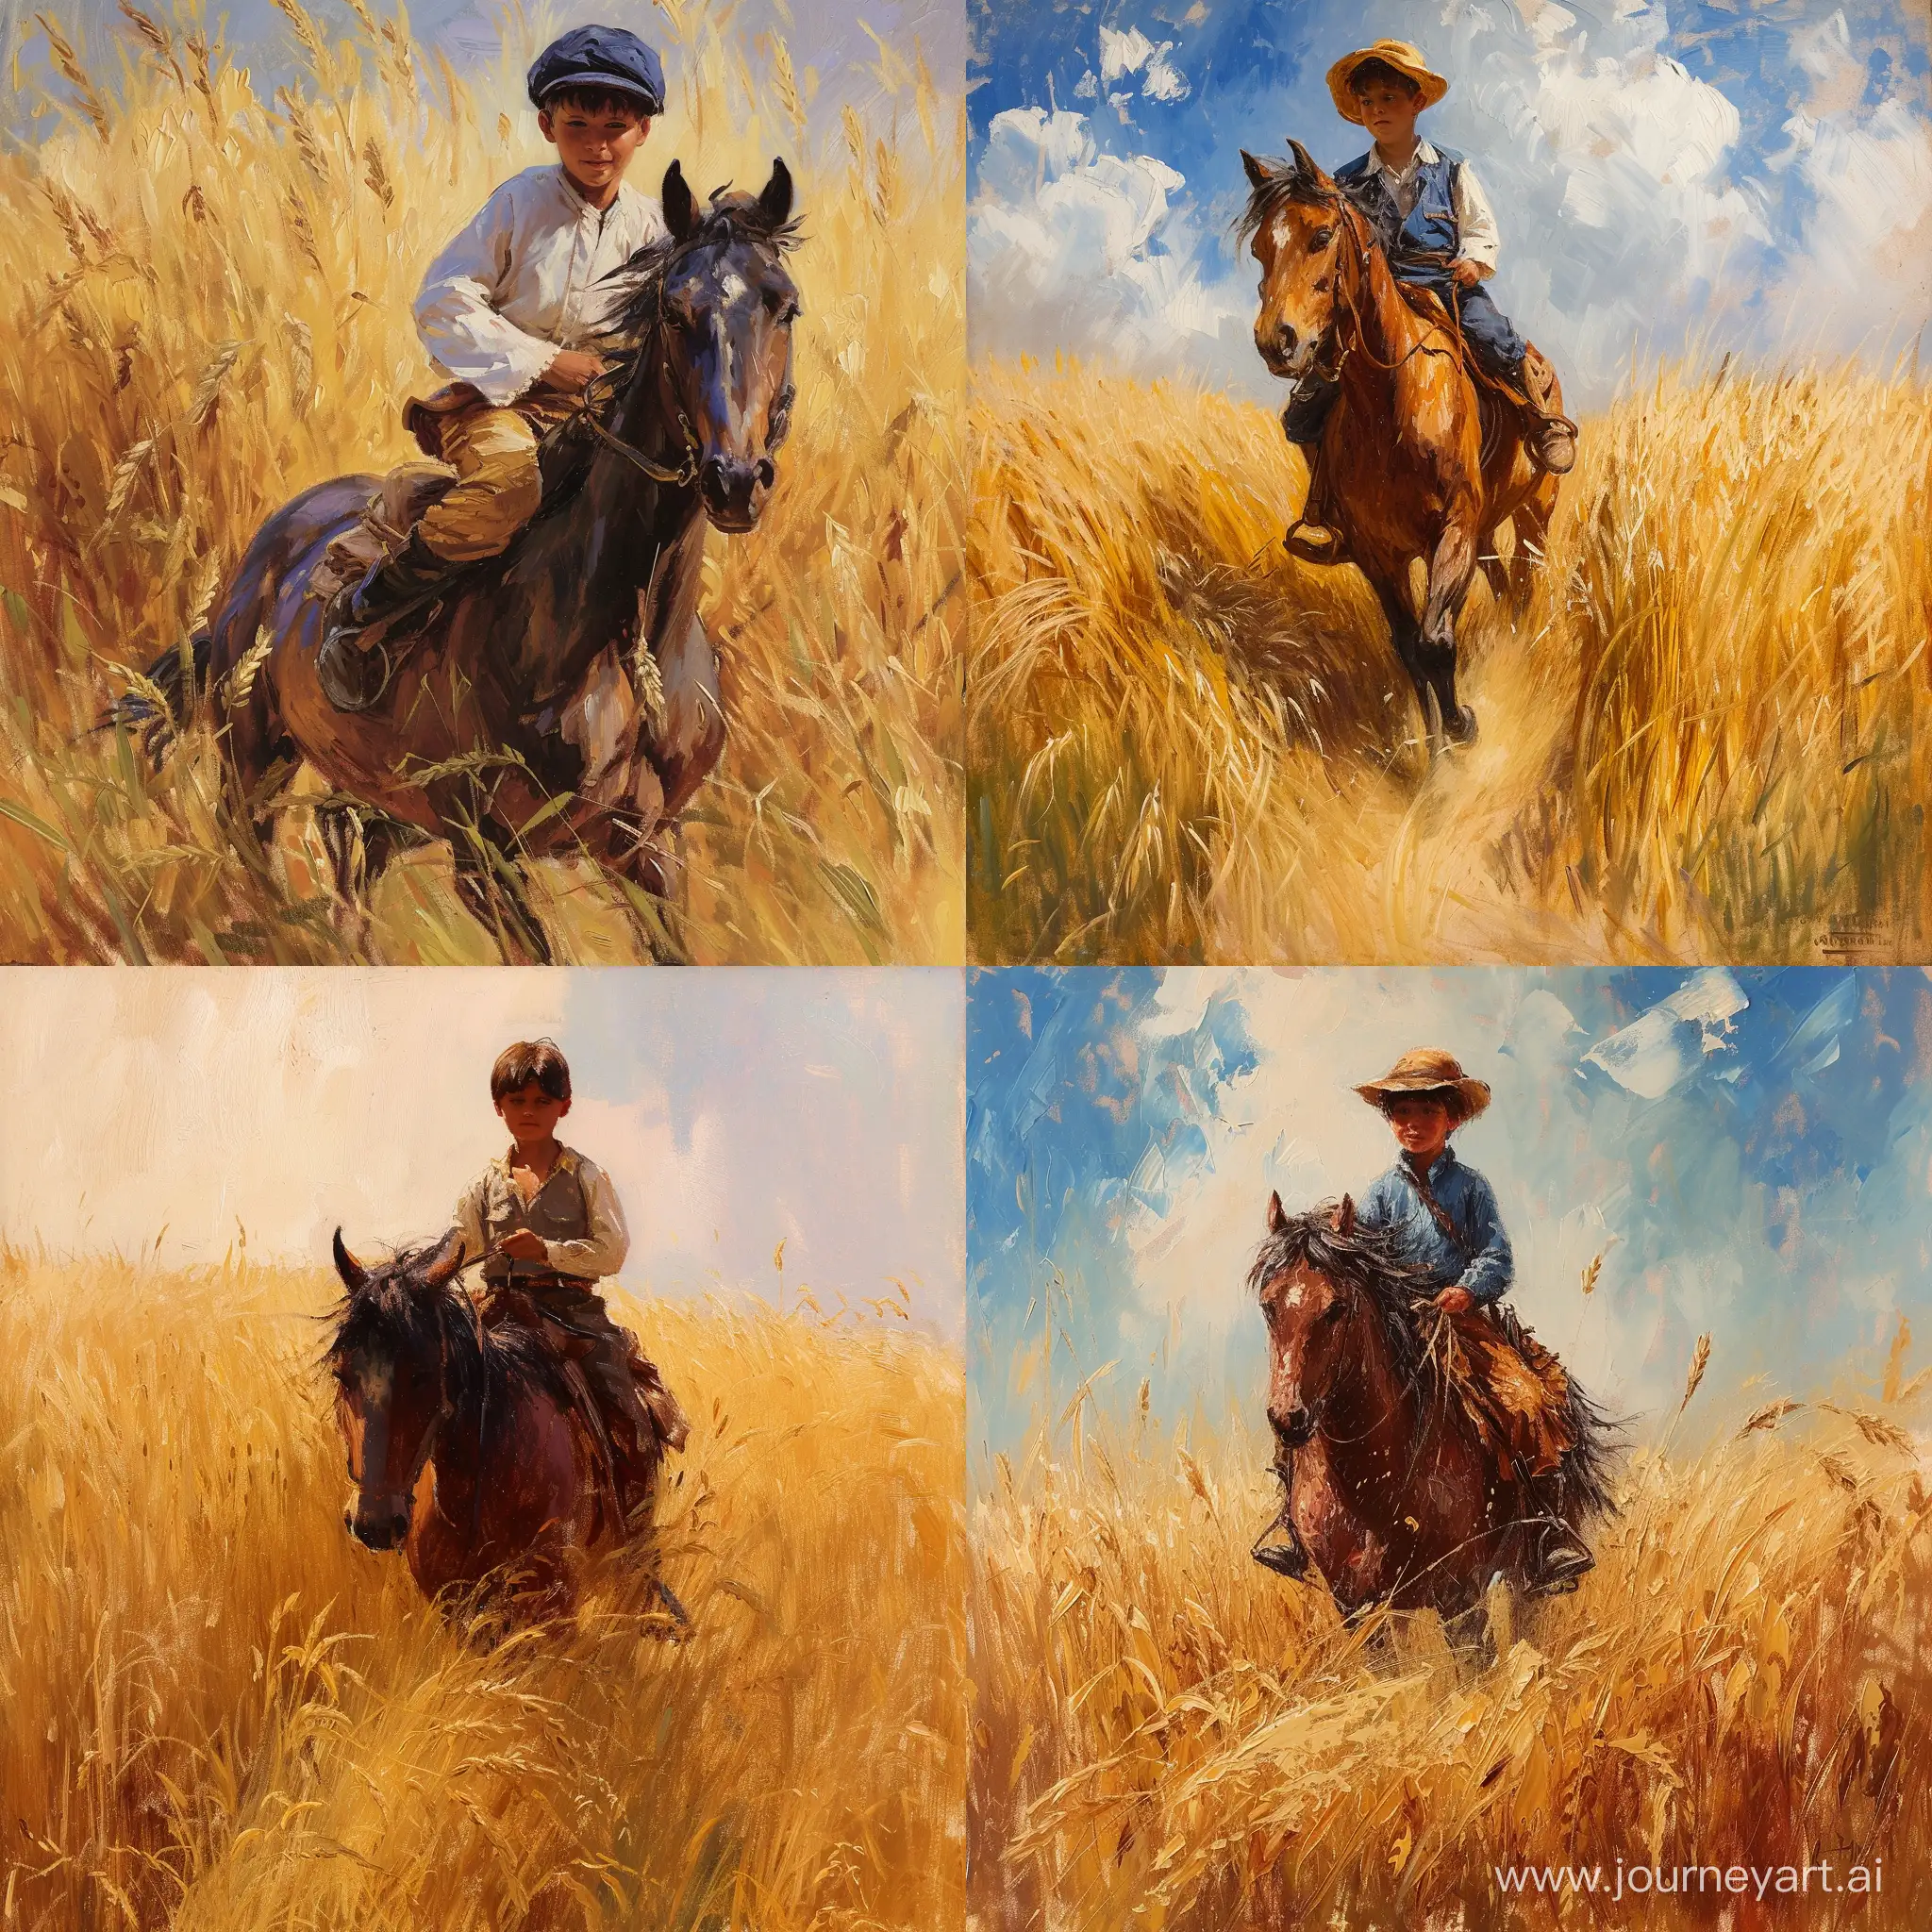 картина в стиле импрессионизма где десятилетний мальчик в деревенской одежде скачет на лошади по пшеничному полю